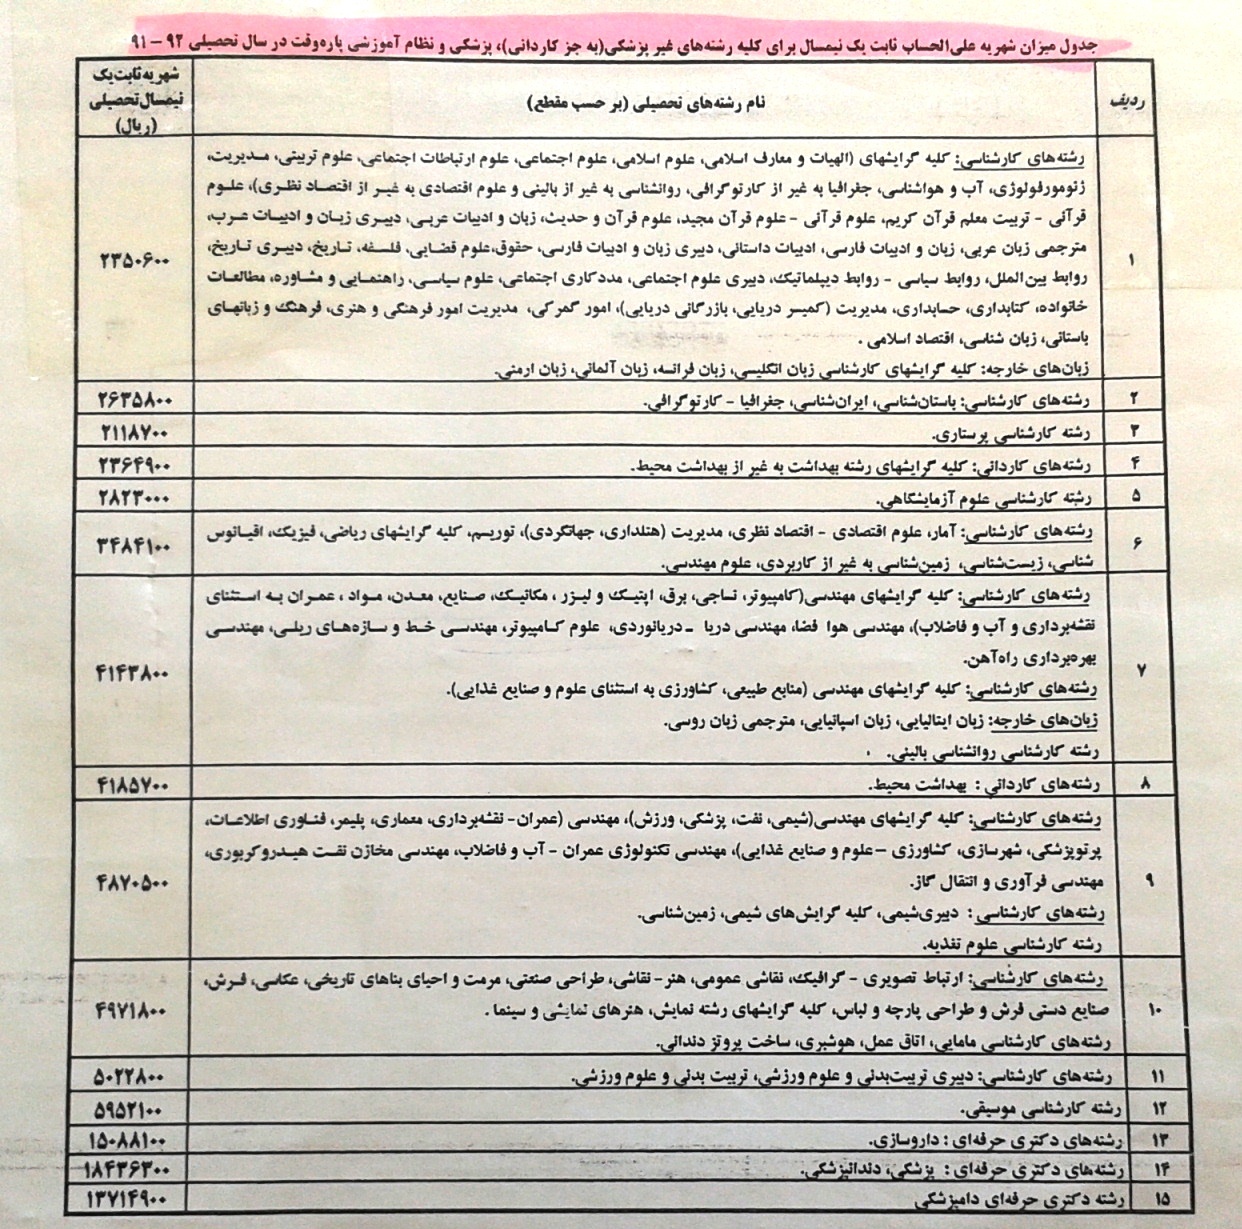 جدول میزان شهریه علی الحساب یک نیمسال برای کلیه رشته های غیر پزشکی ( به جز کاردانی ) ، پزشکی و نظام آموزشی پاره وقت در سال تحصیلی 91-92